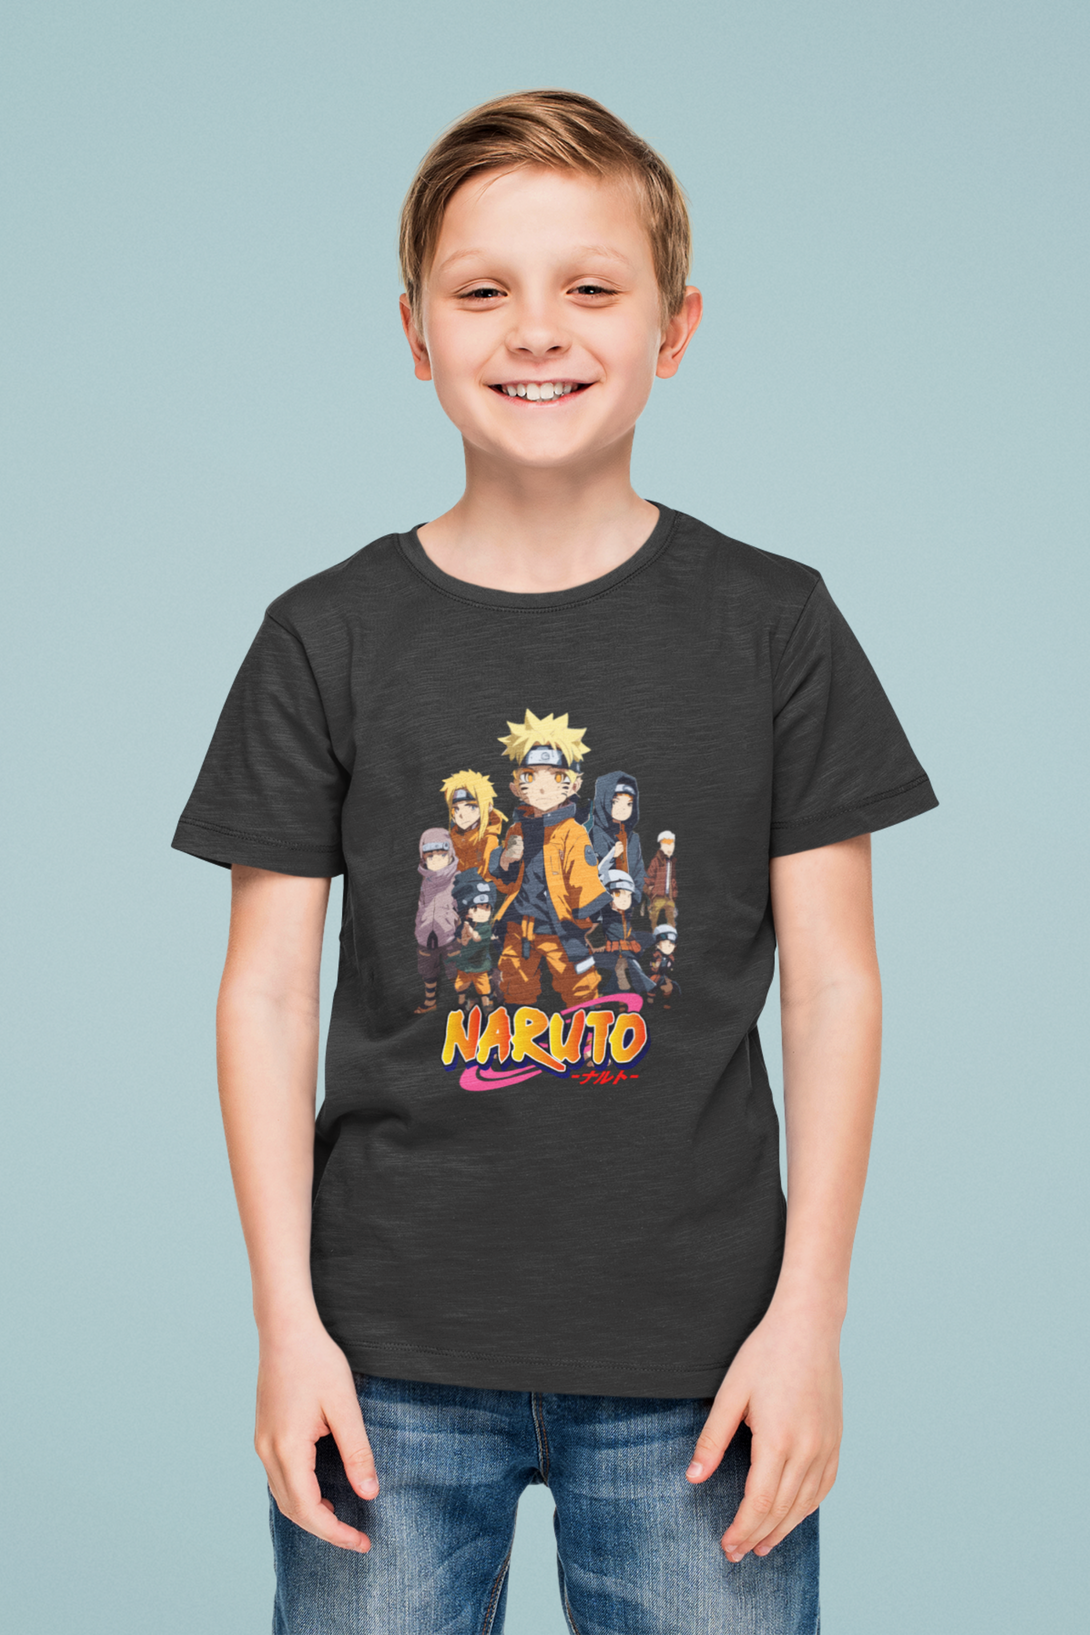 Anime Tiny Naruto Printed T-Shirt For Boy - WowWaves - 4